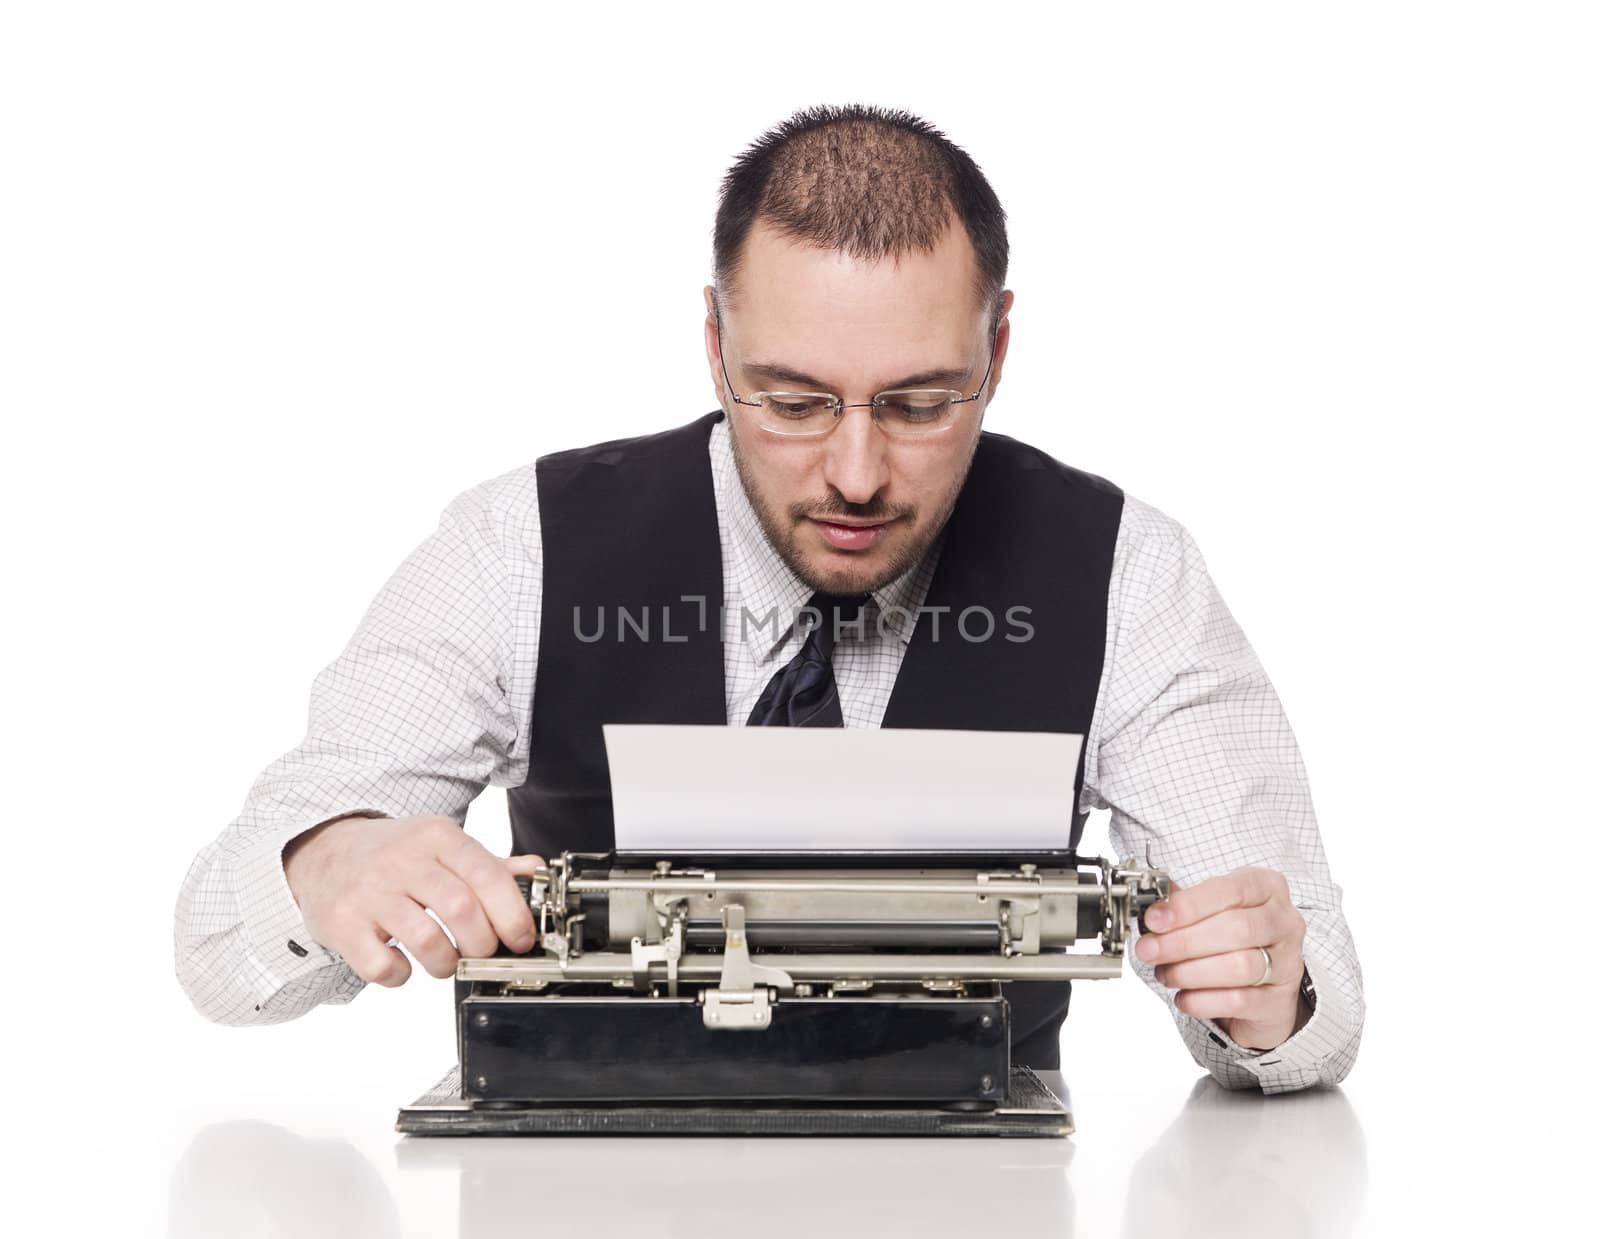 Man writing on a vintage typewriter